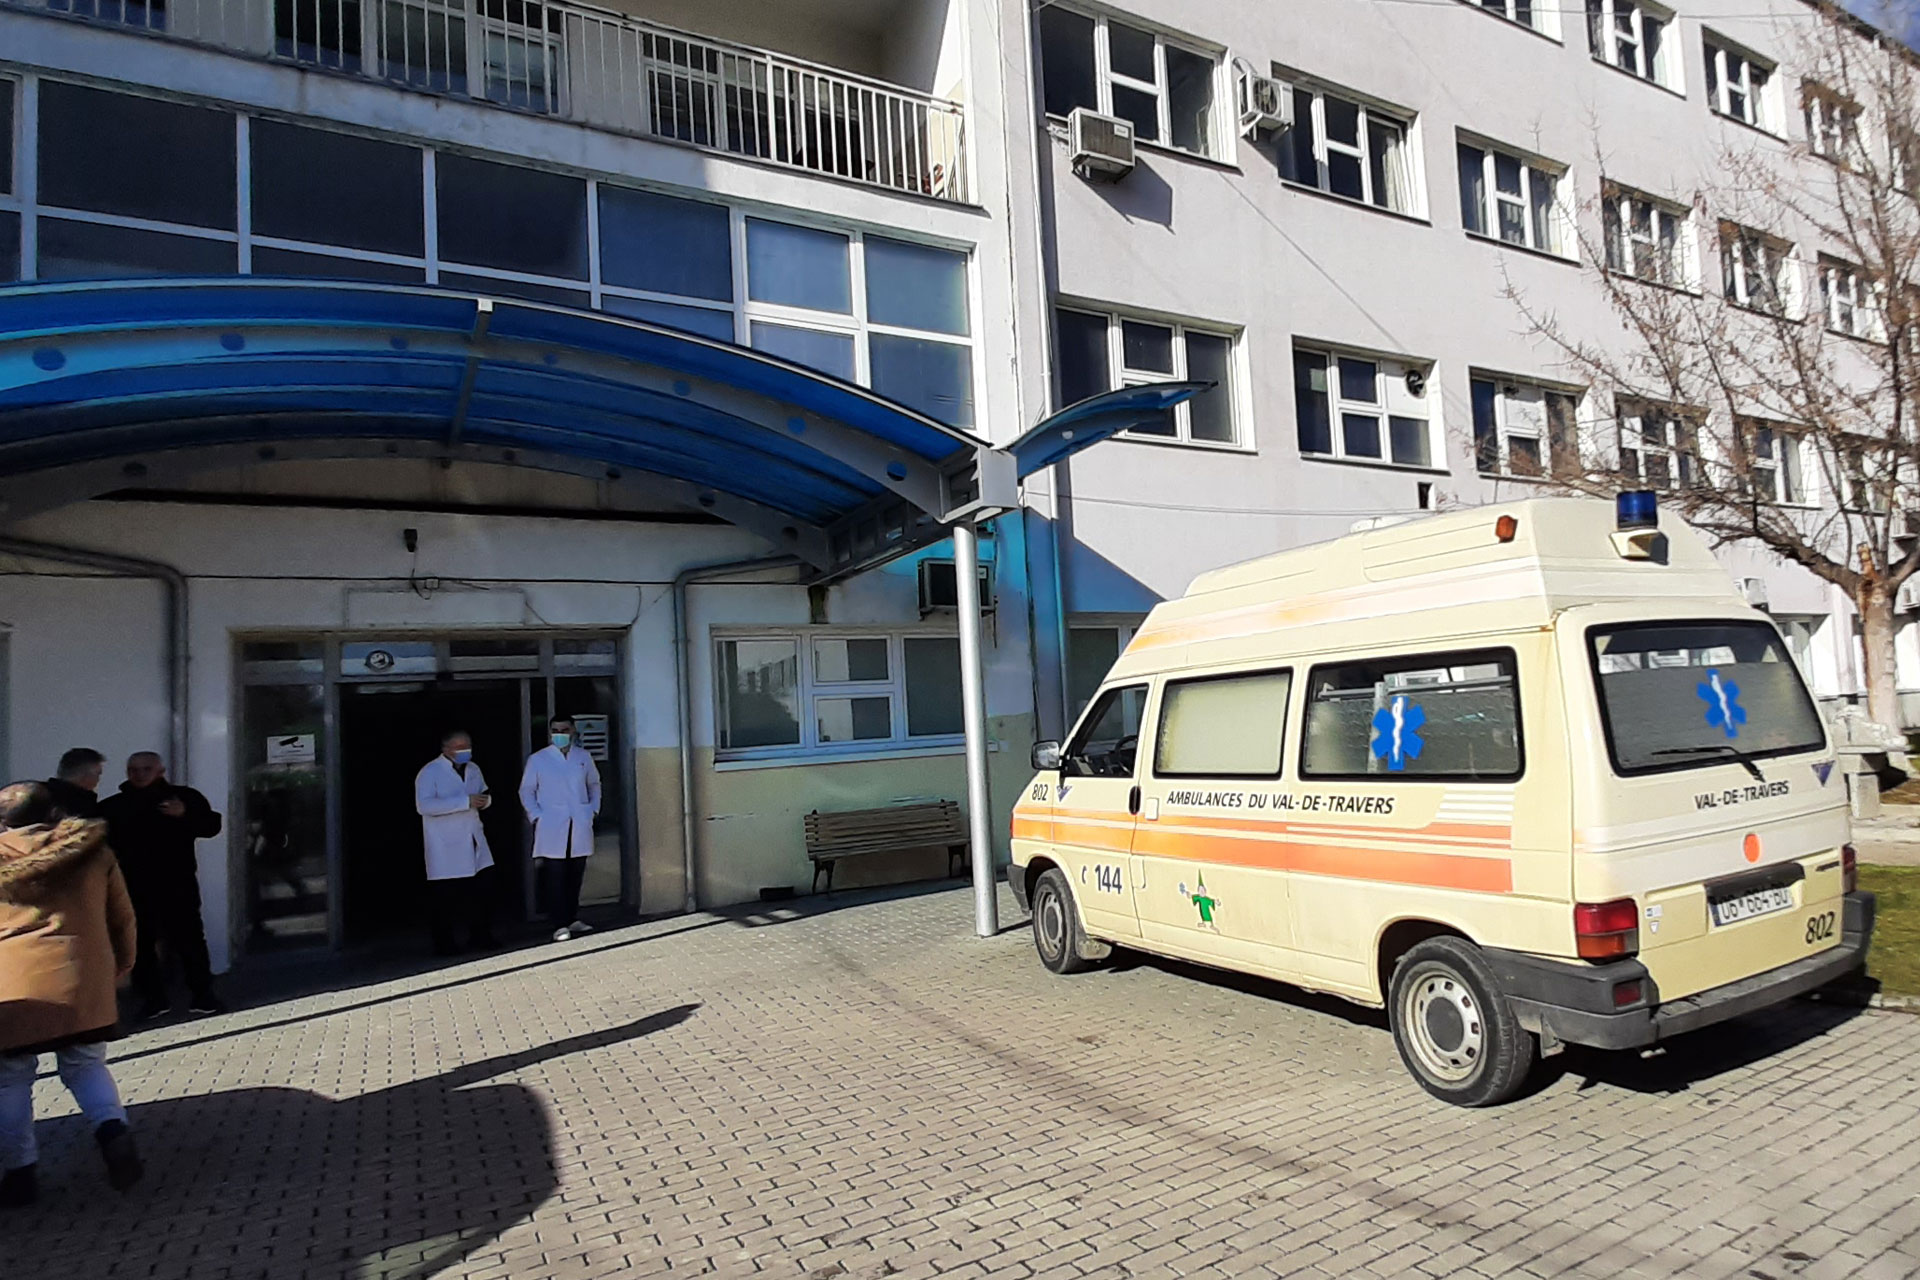 Vdes një i burgosur në spitalin e Gjilanit